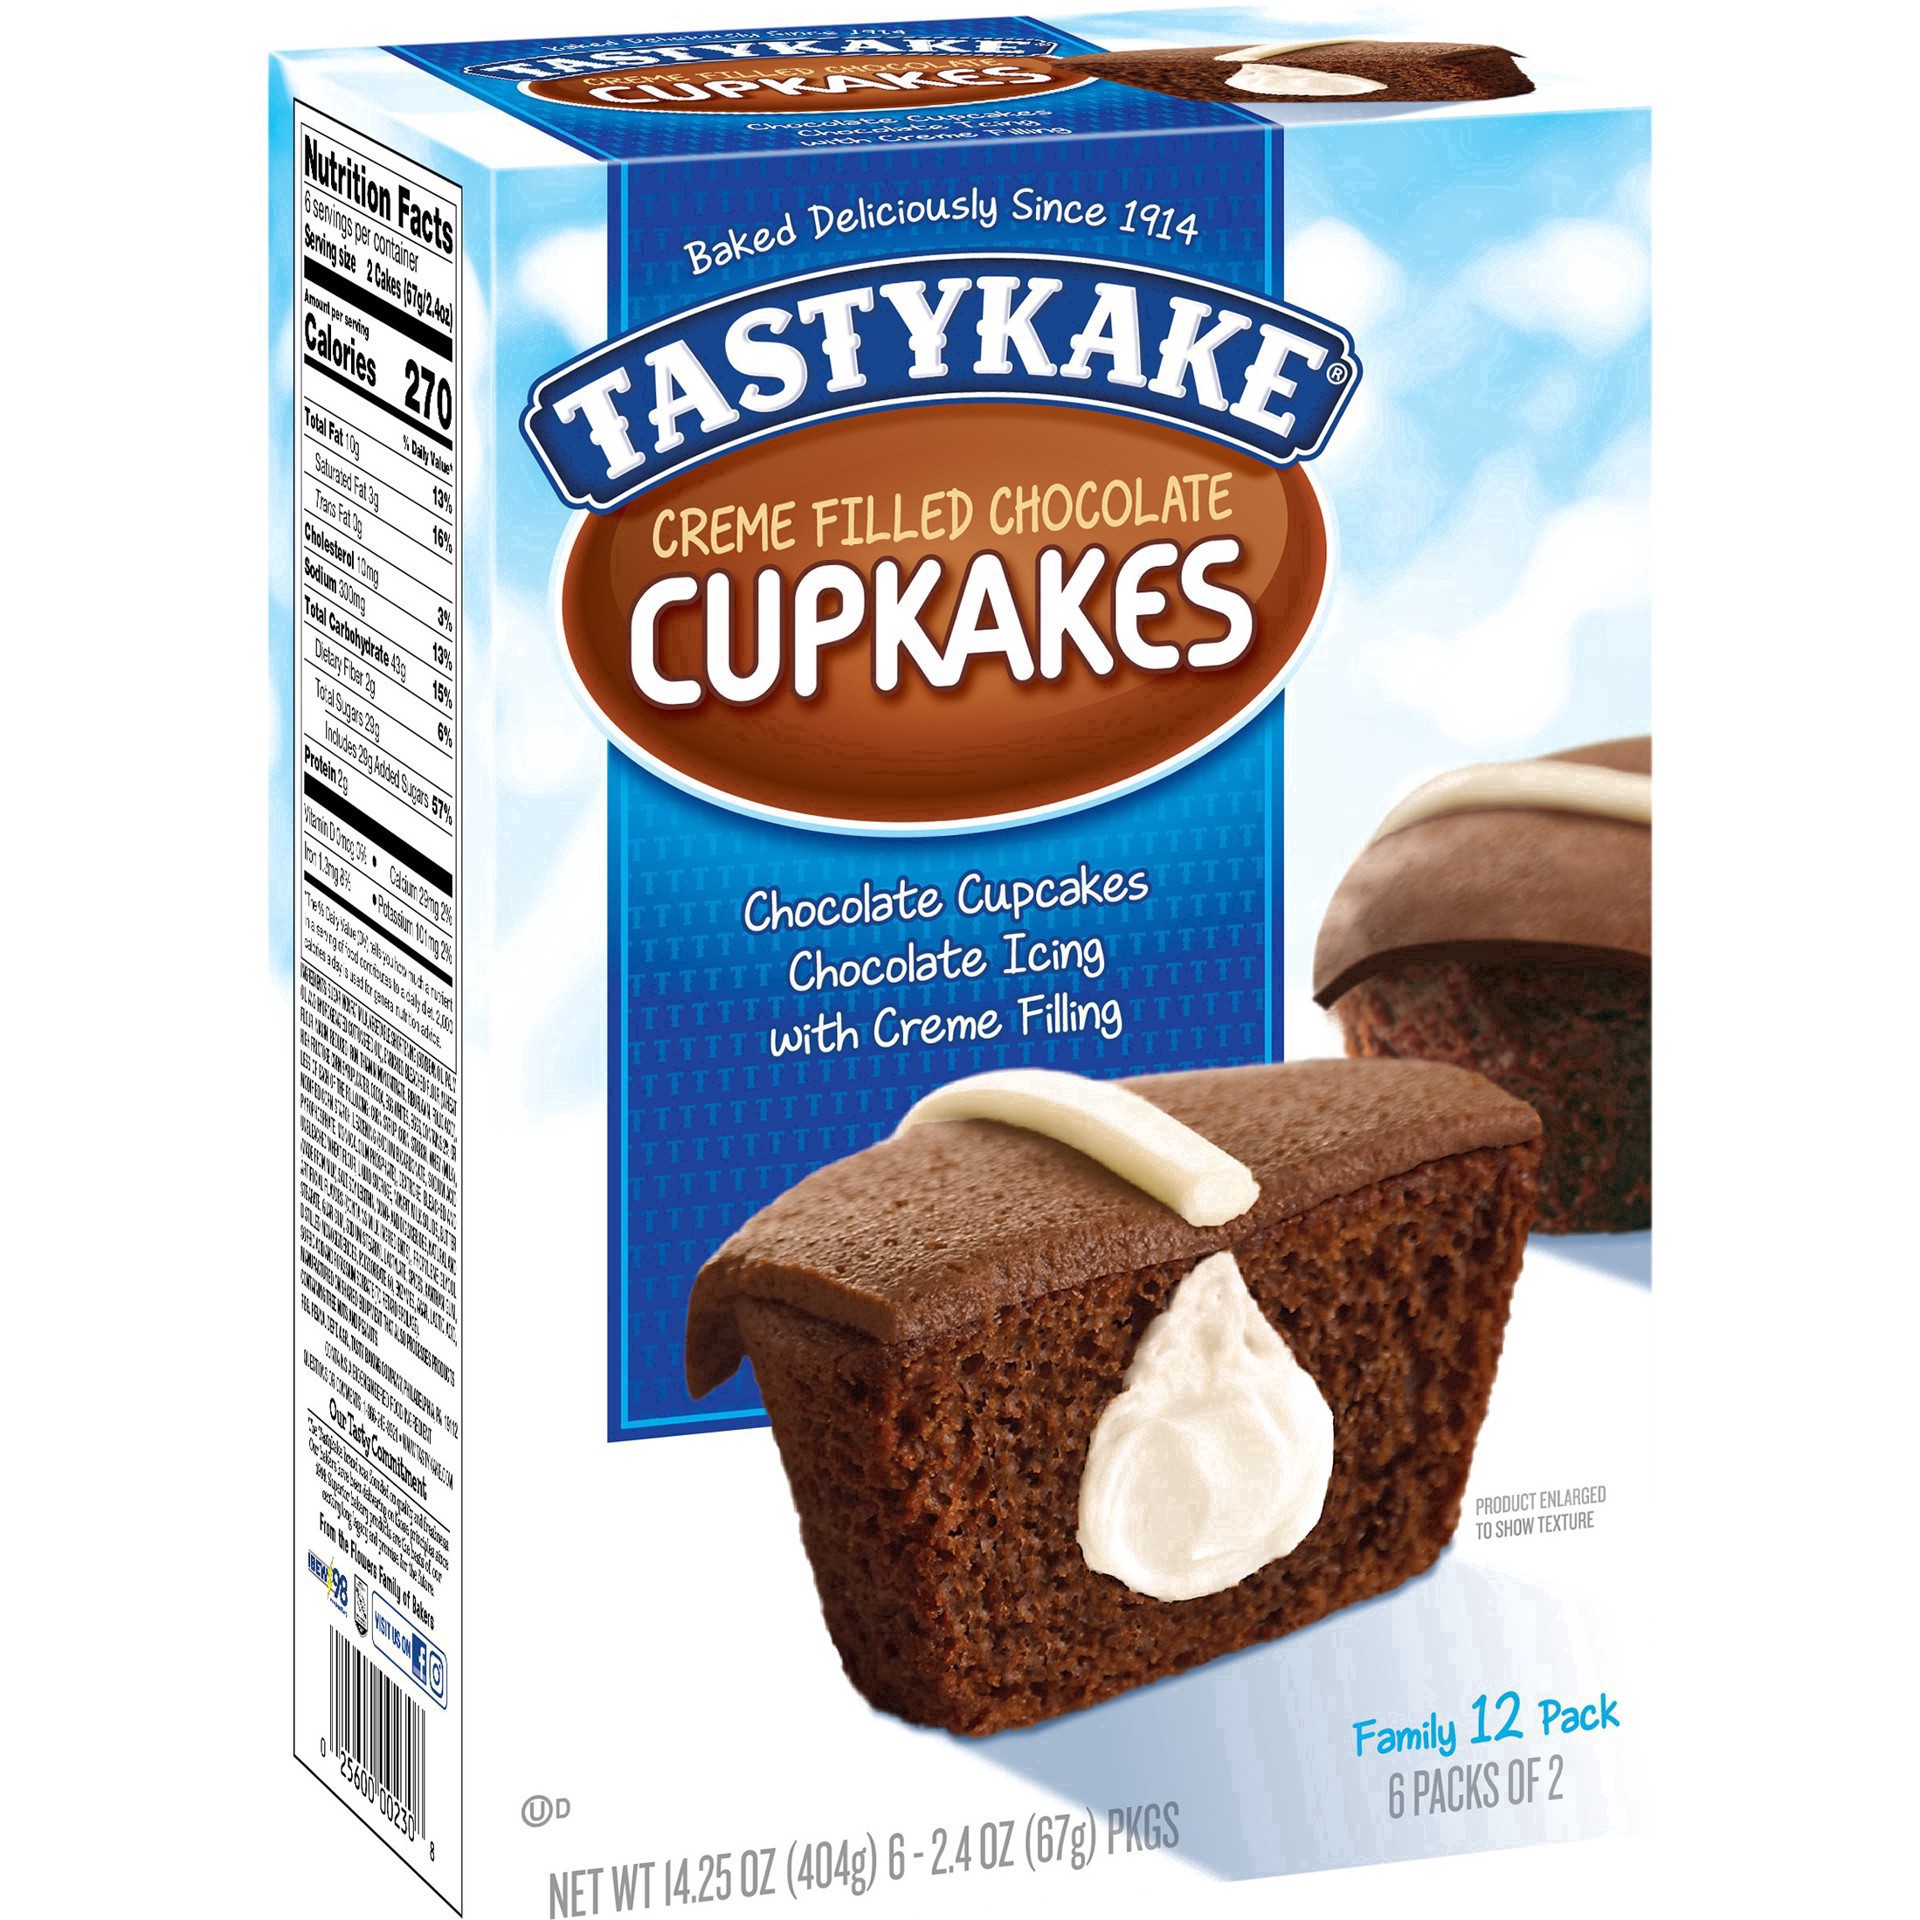 slide 4 of 59, Tastykake Creme Filled Chocolate Cupcakes 6-2.4 oz. Packs, 6 ct